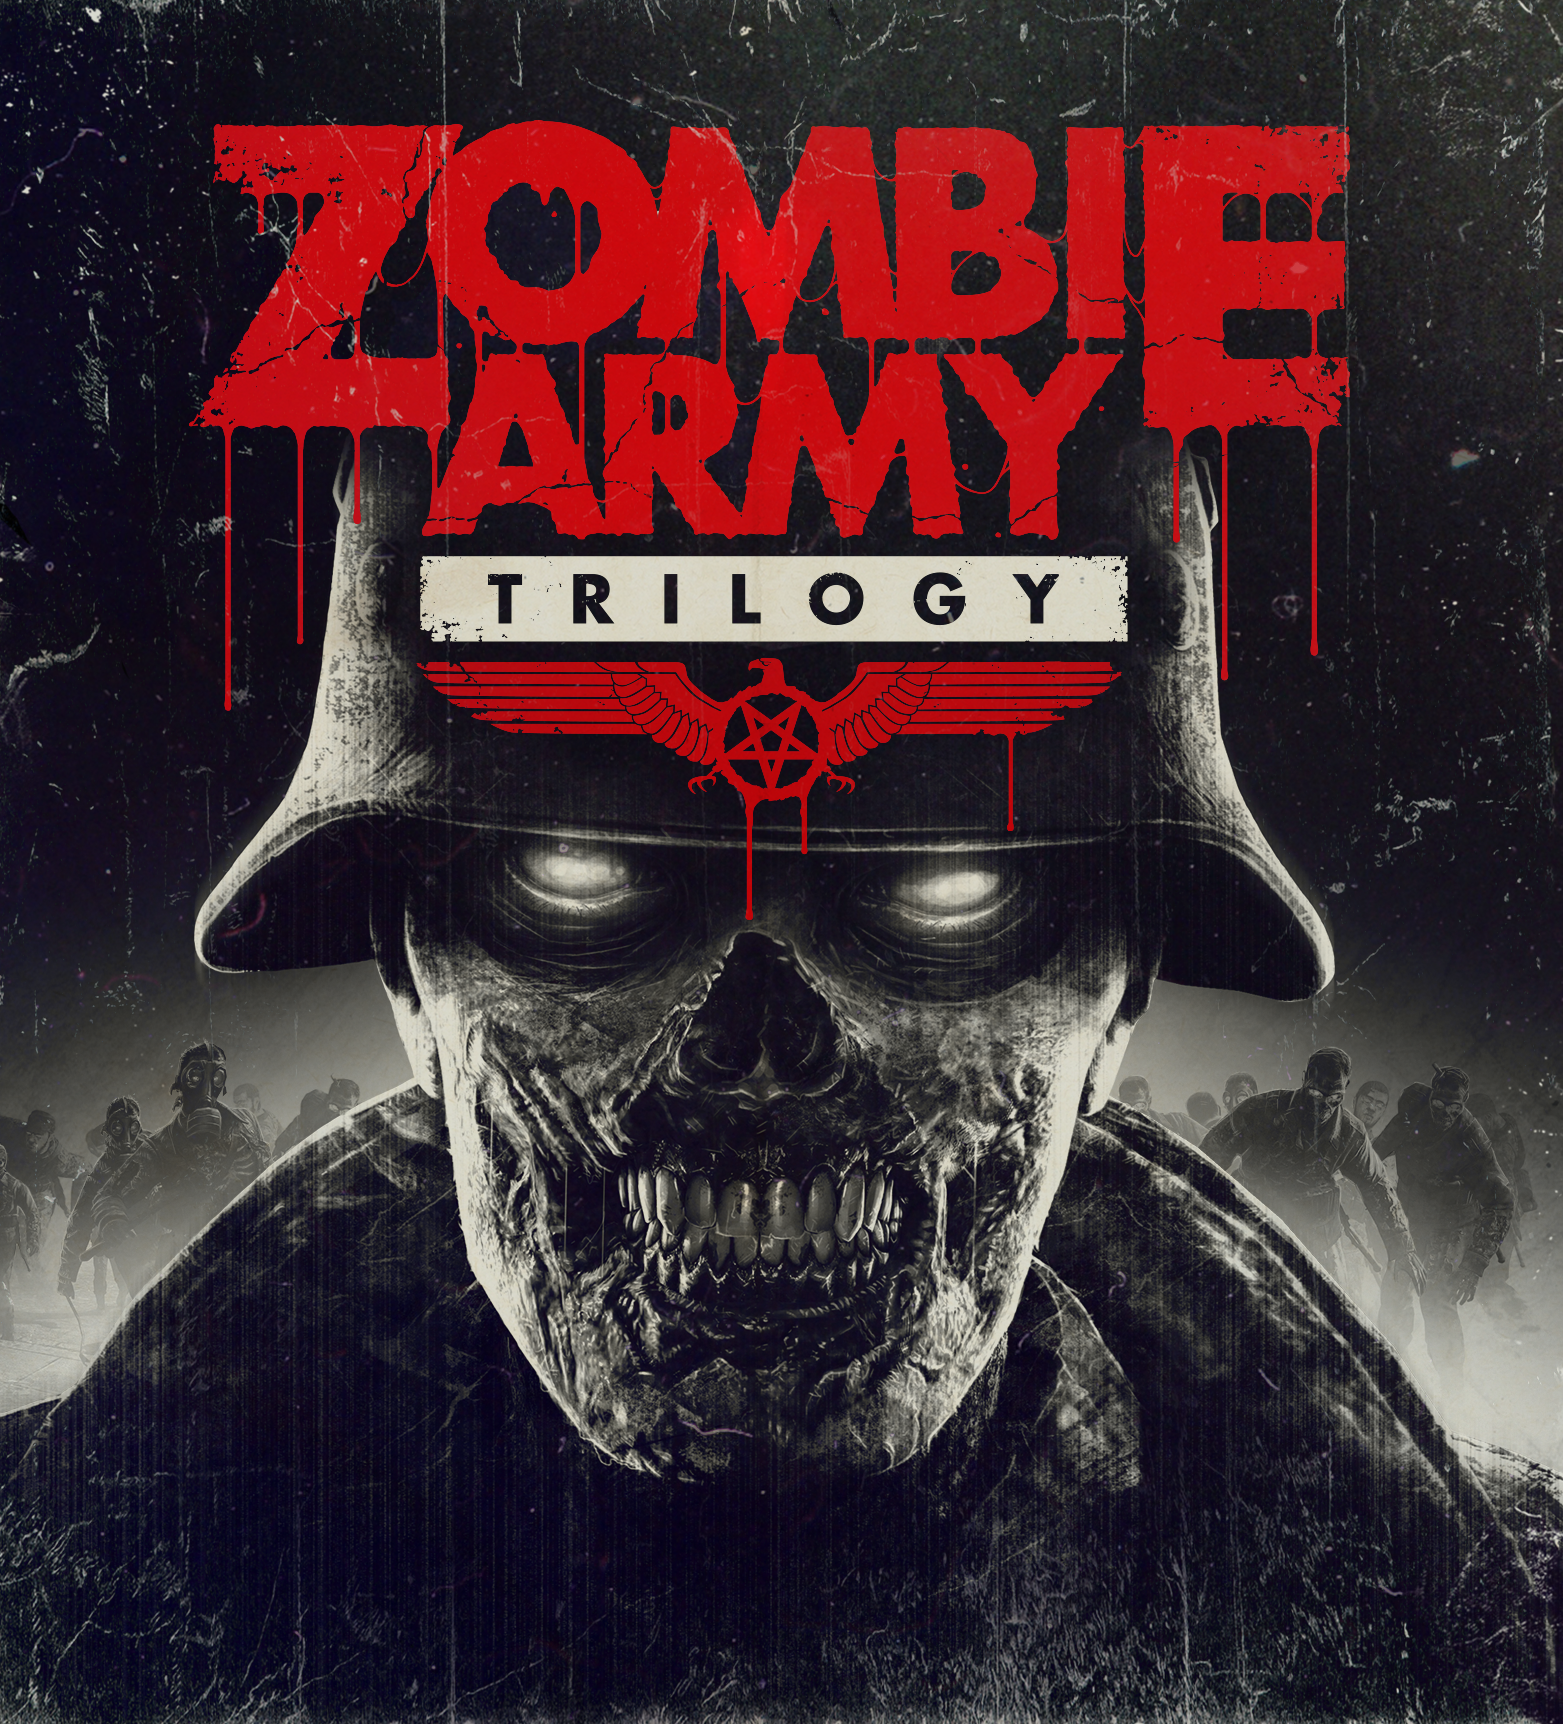 Zombie Army 4: Dead War - Wikipedia